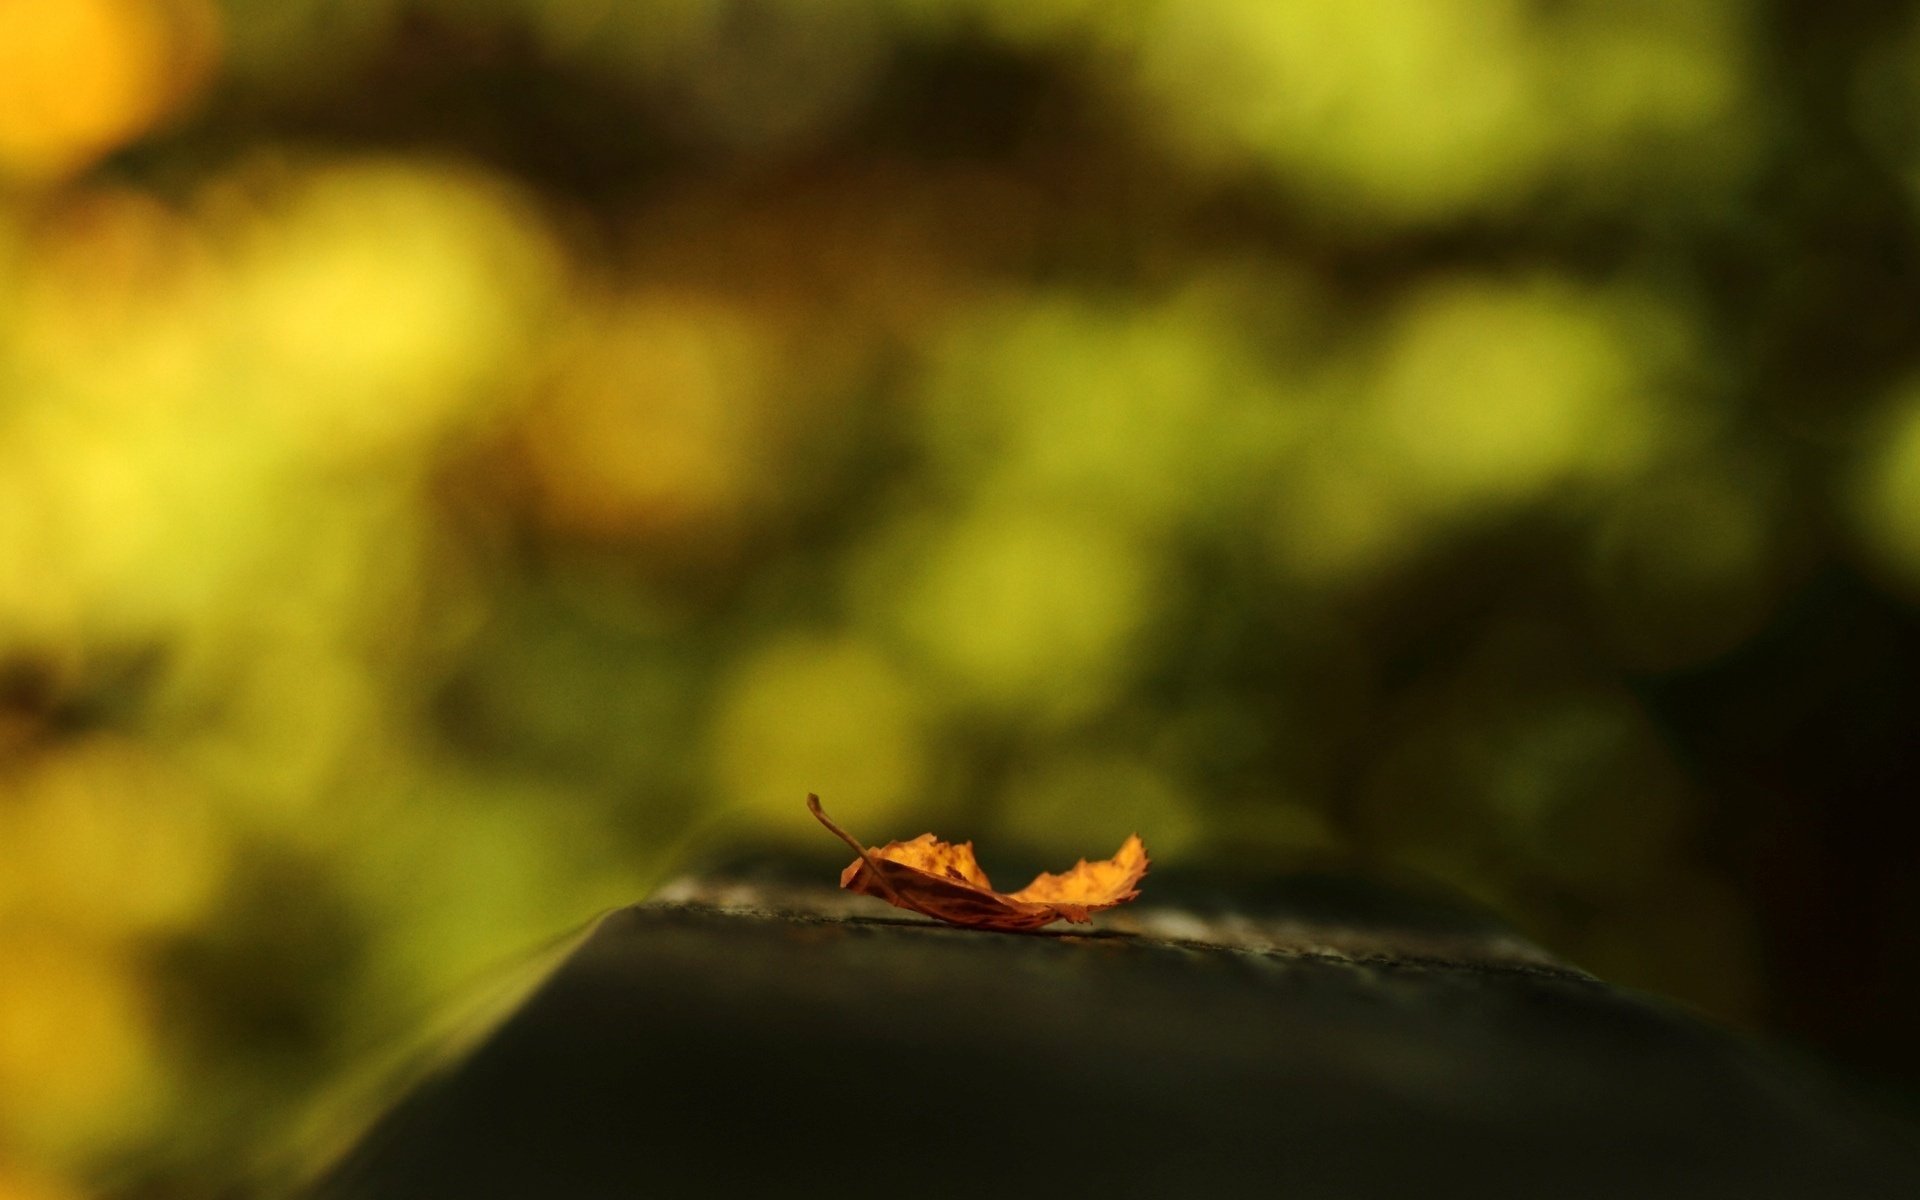 Orange leaf on a blurry background